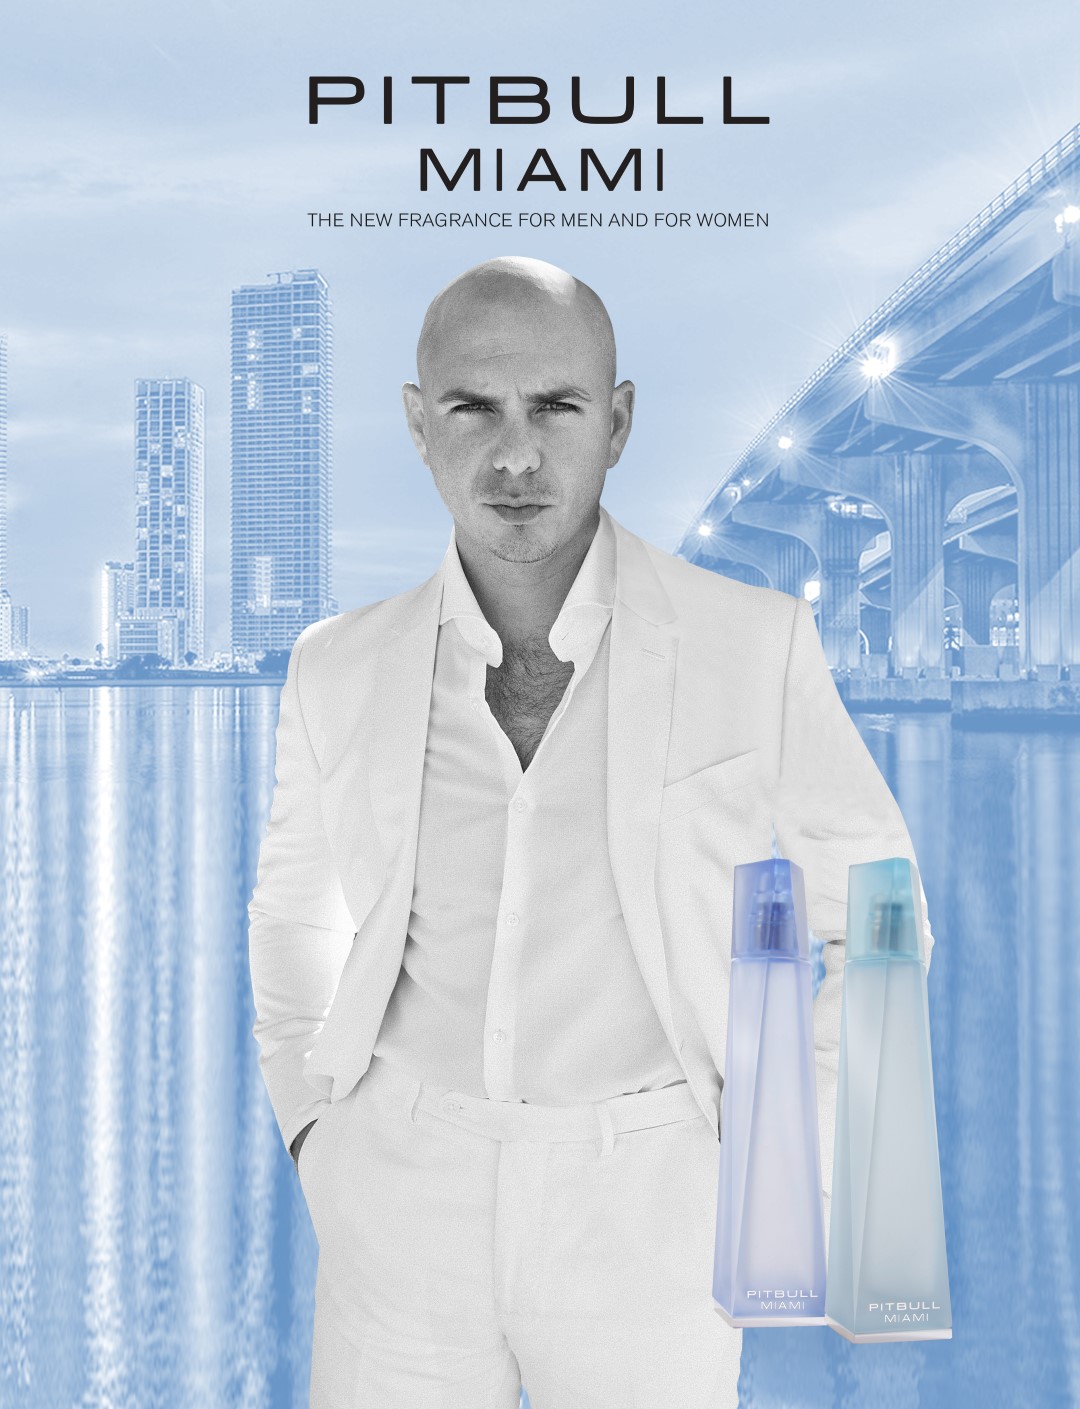 Pitbull profumo: le nuove fragranze Pitbull Miami per lui e per lei